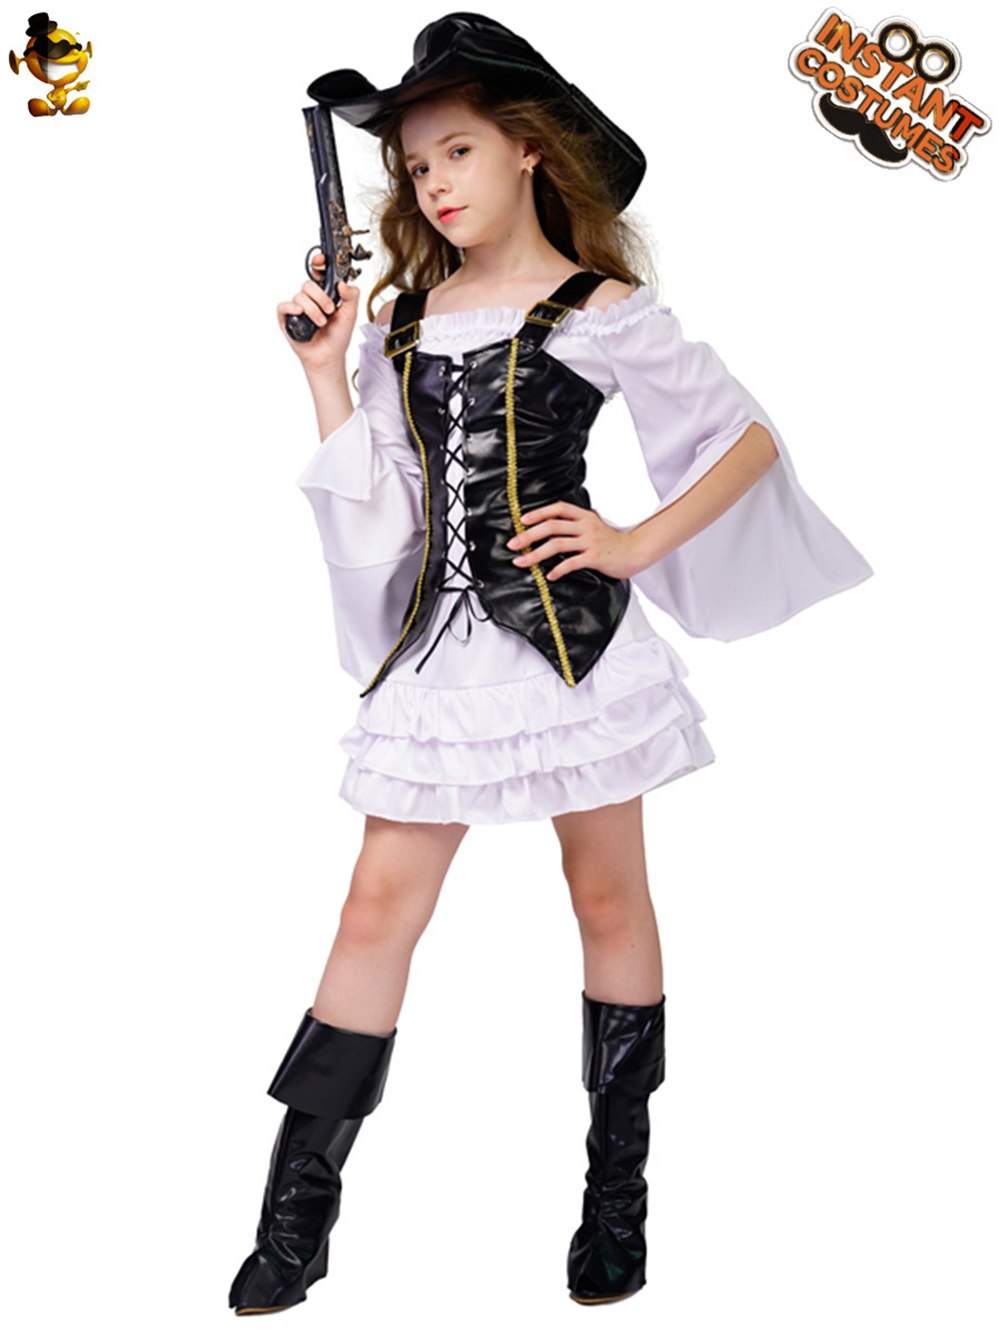 Halloween -Kostüme Mädchen Kleidung Pirate Cosplay Closty Party Kleidung Performance Kostüme für Mädchen